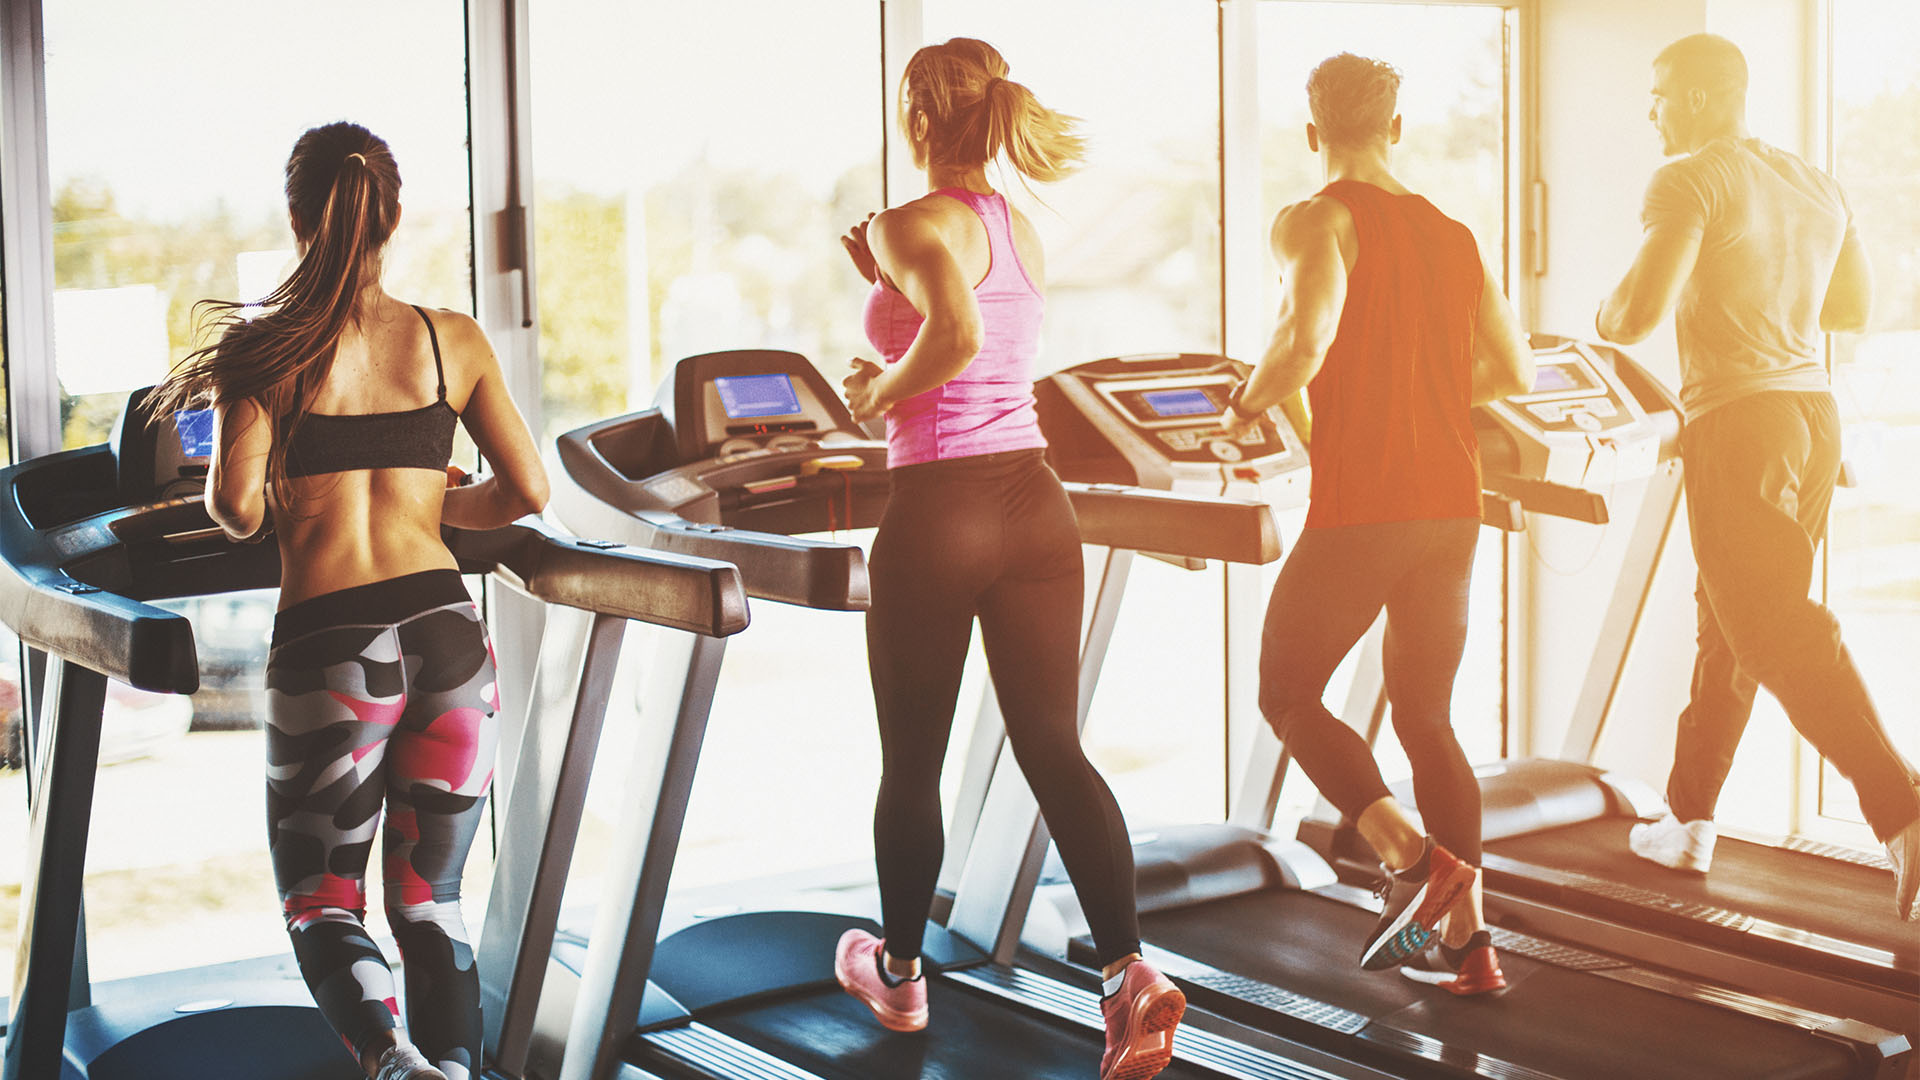 L'esercizio fisico è un indicatore di buona salute fisica e mentale (Getty)